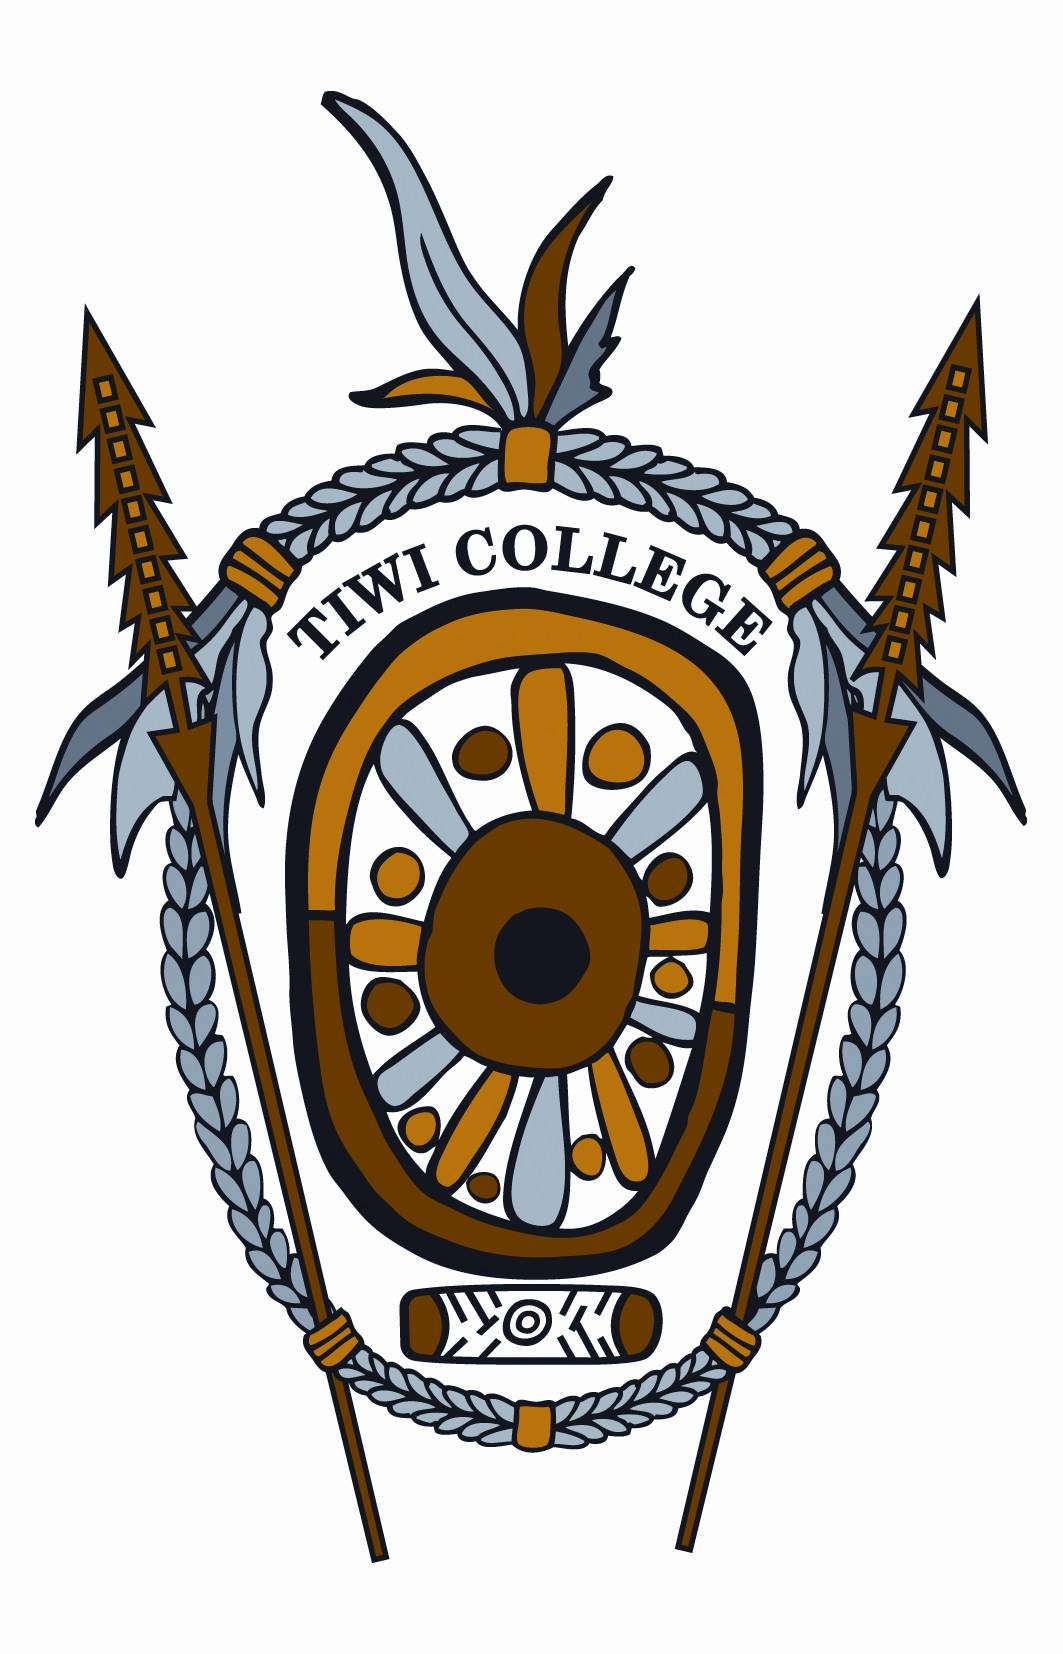 Tiwi College校徽